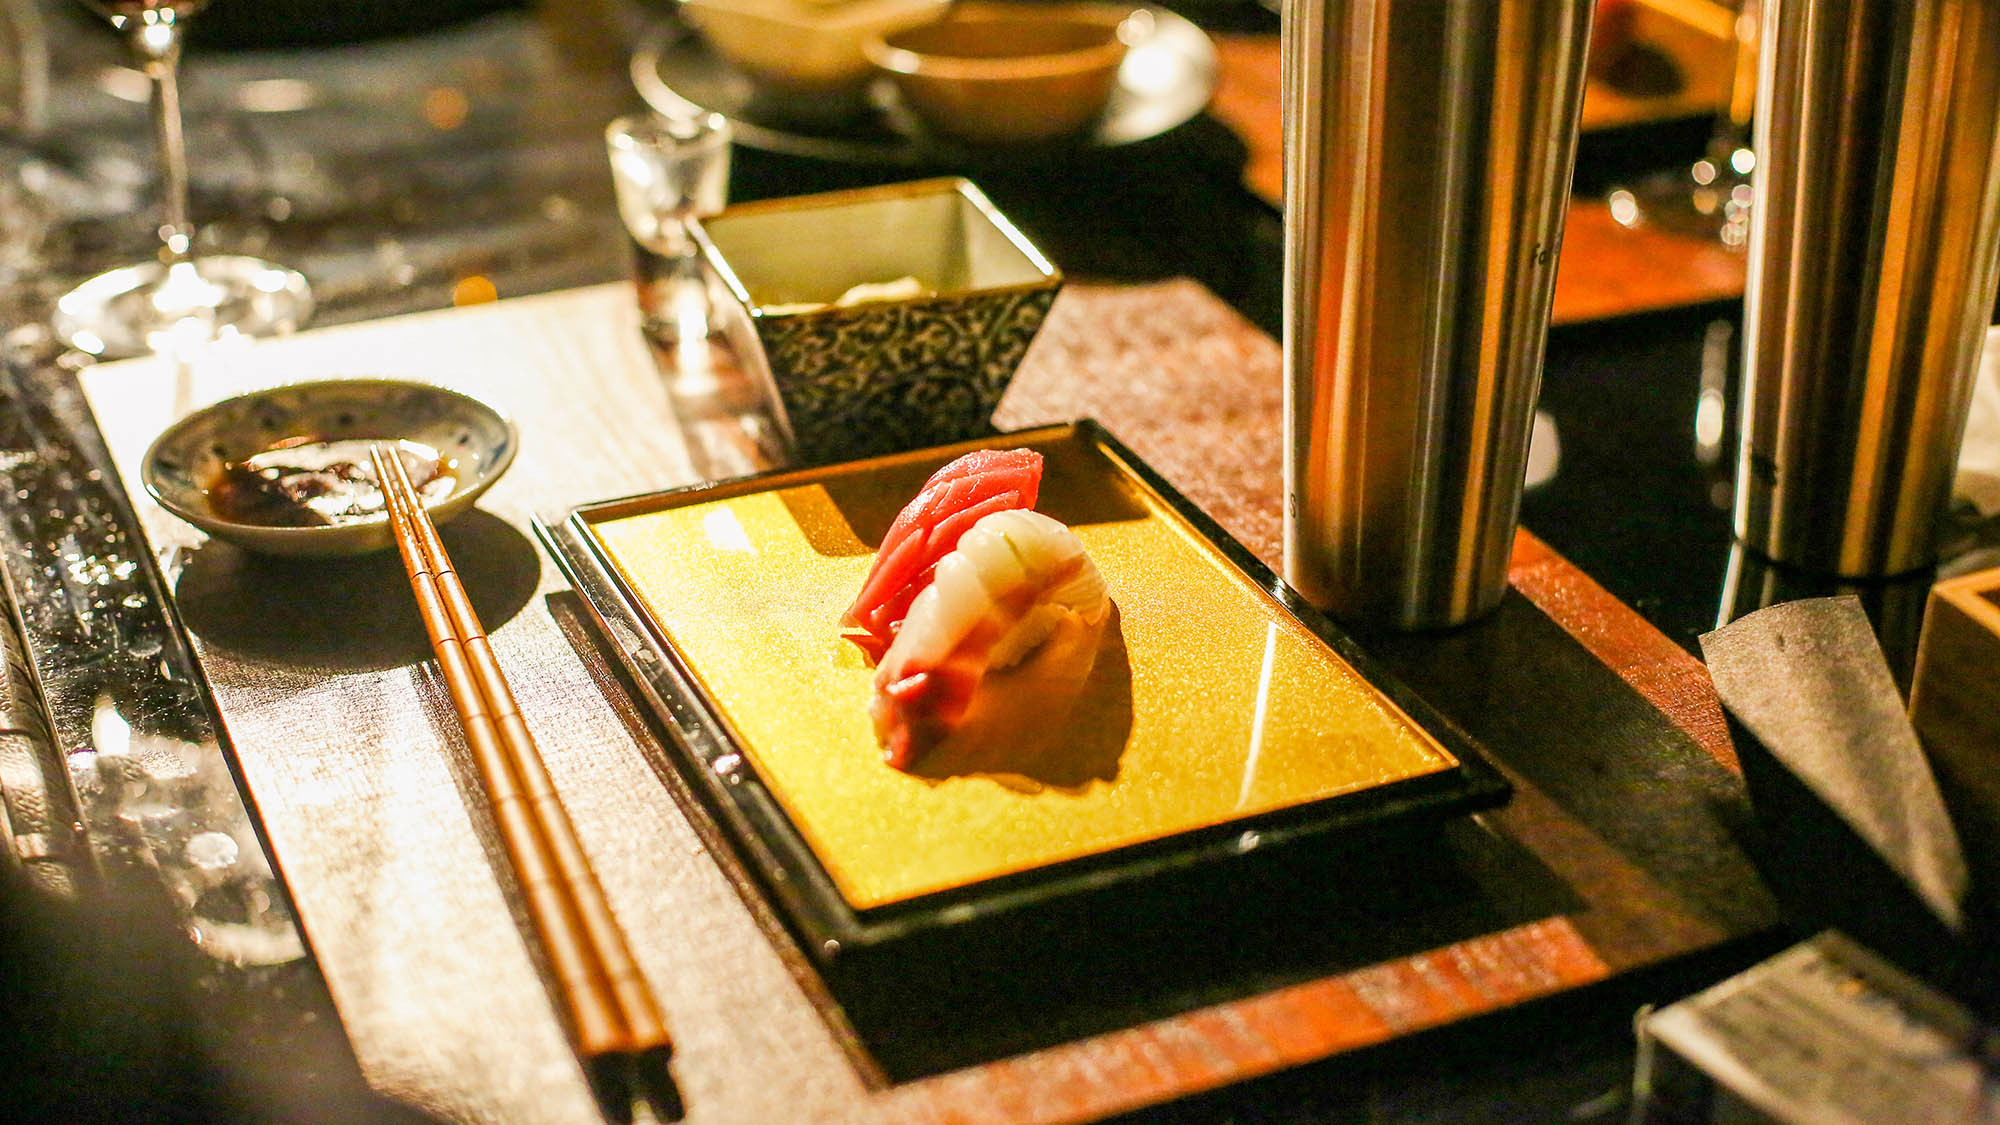 ・【グランピング・専属シェフ寿司ver.】握り立ての寿司をご賞味ください